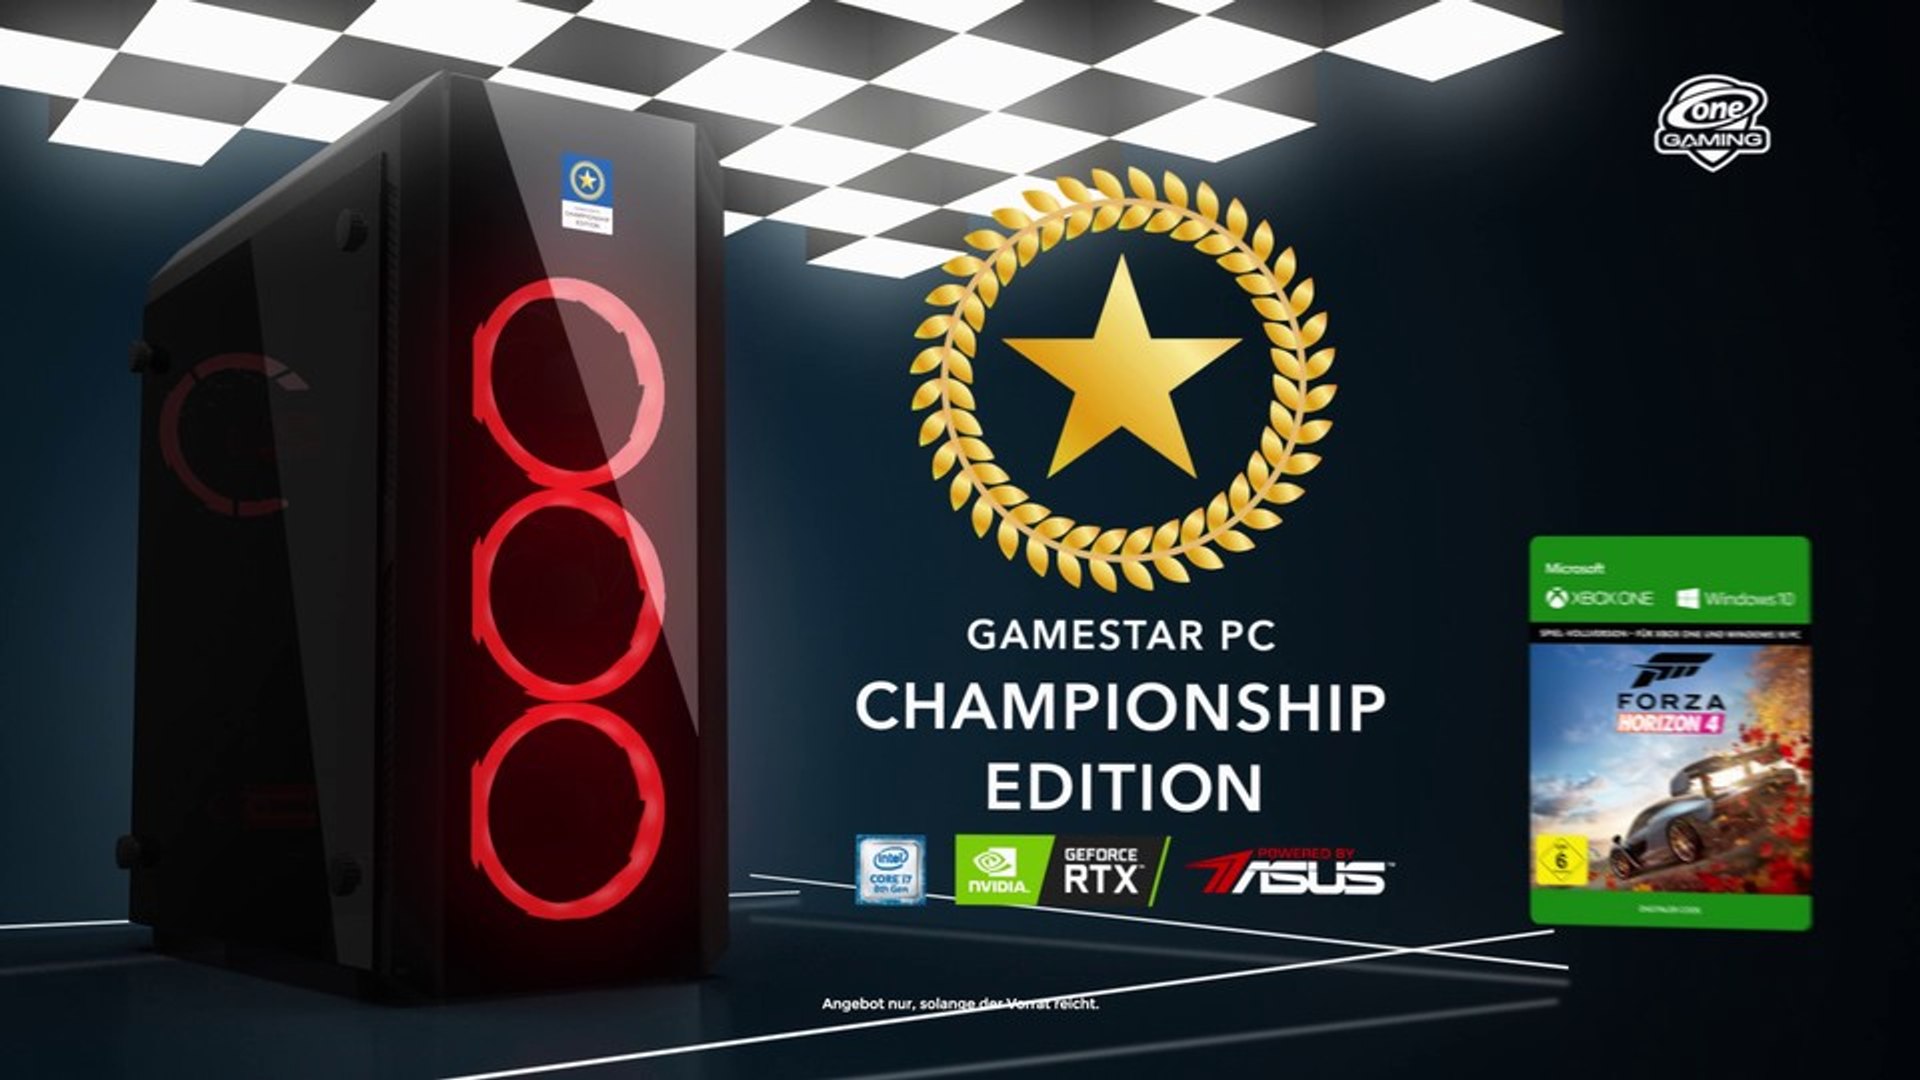 GameStar-PC Championship Edition von ONE GAMING - GeForce RTX 2070 und  Forza Horizon 4 für eine völlig neue Art von Gaming - video Dailymotion